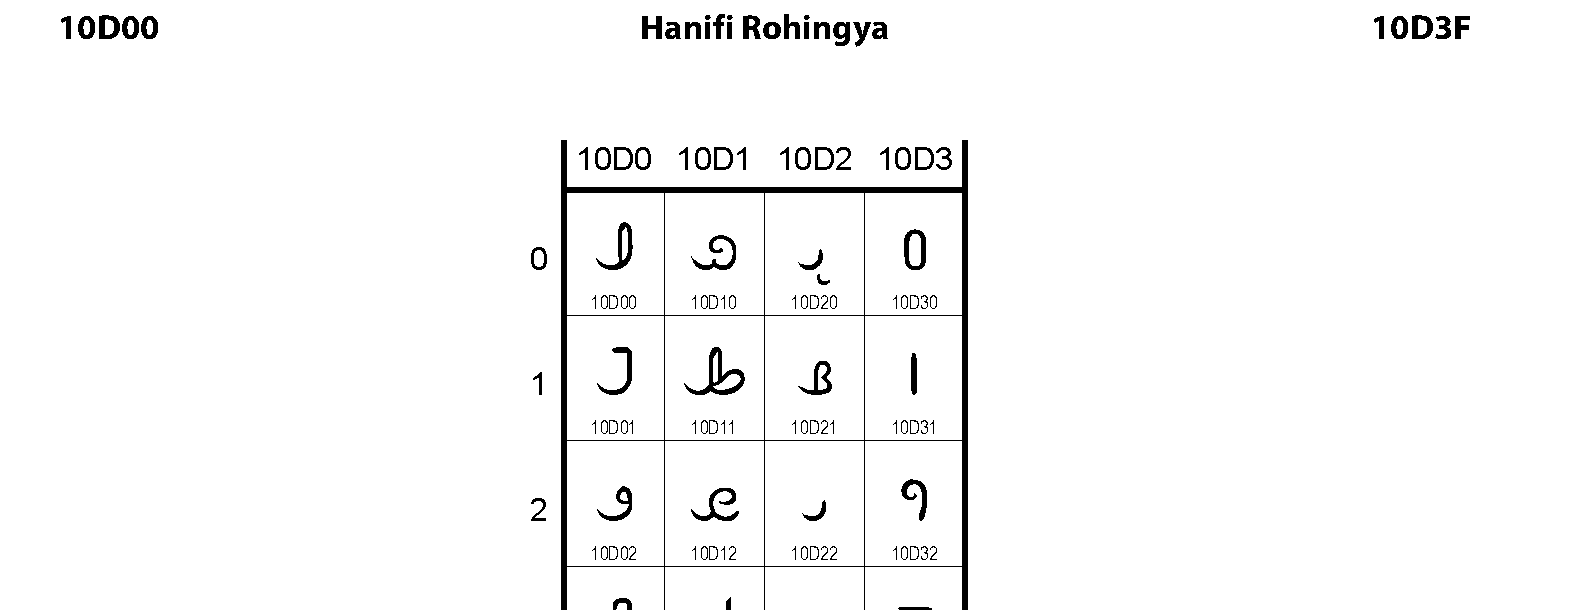 Unicode - Hanifi Rohingya